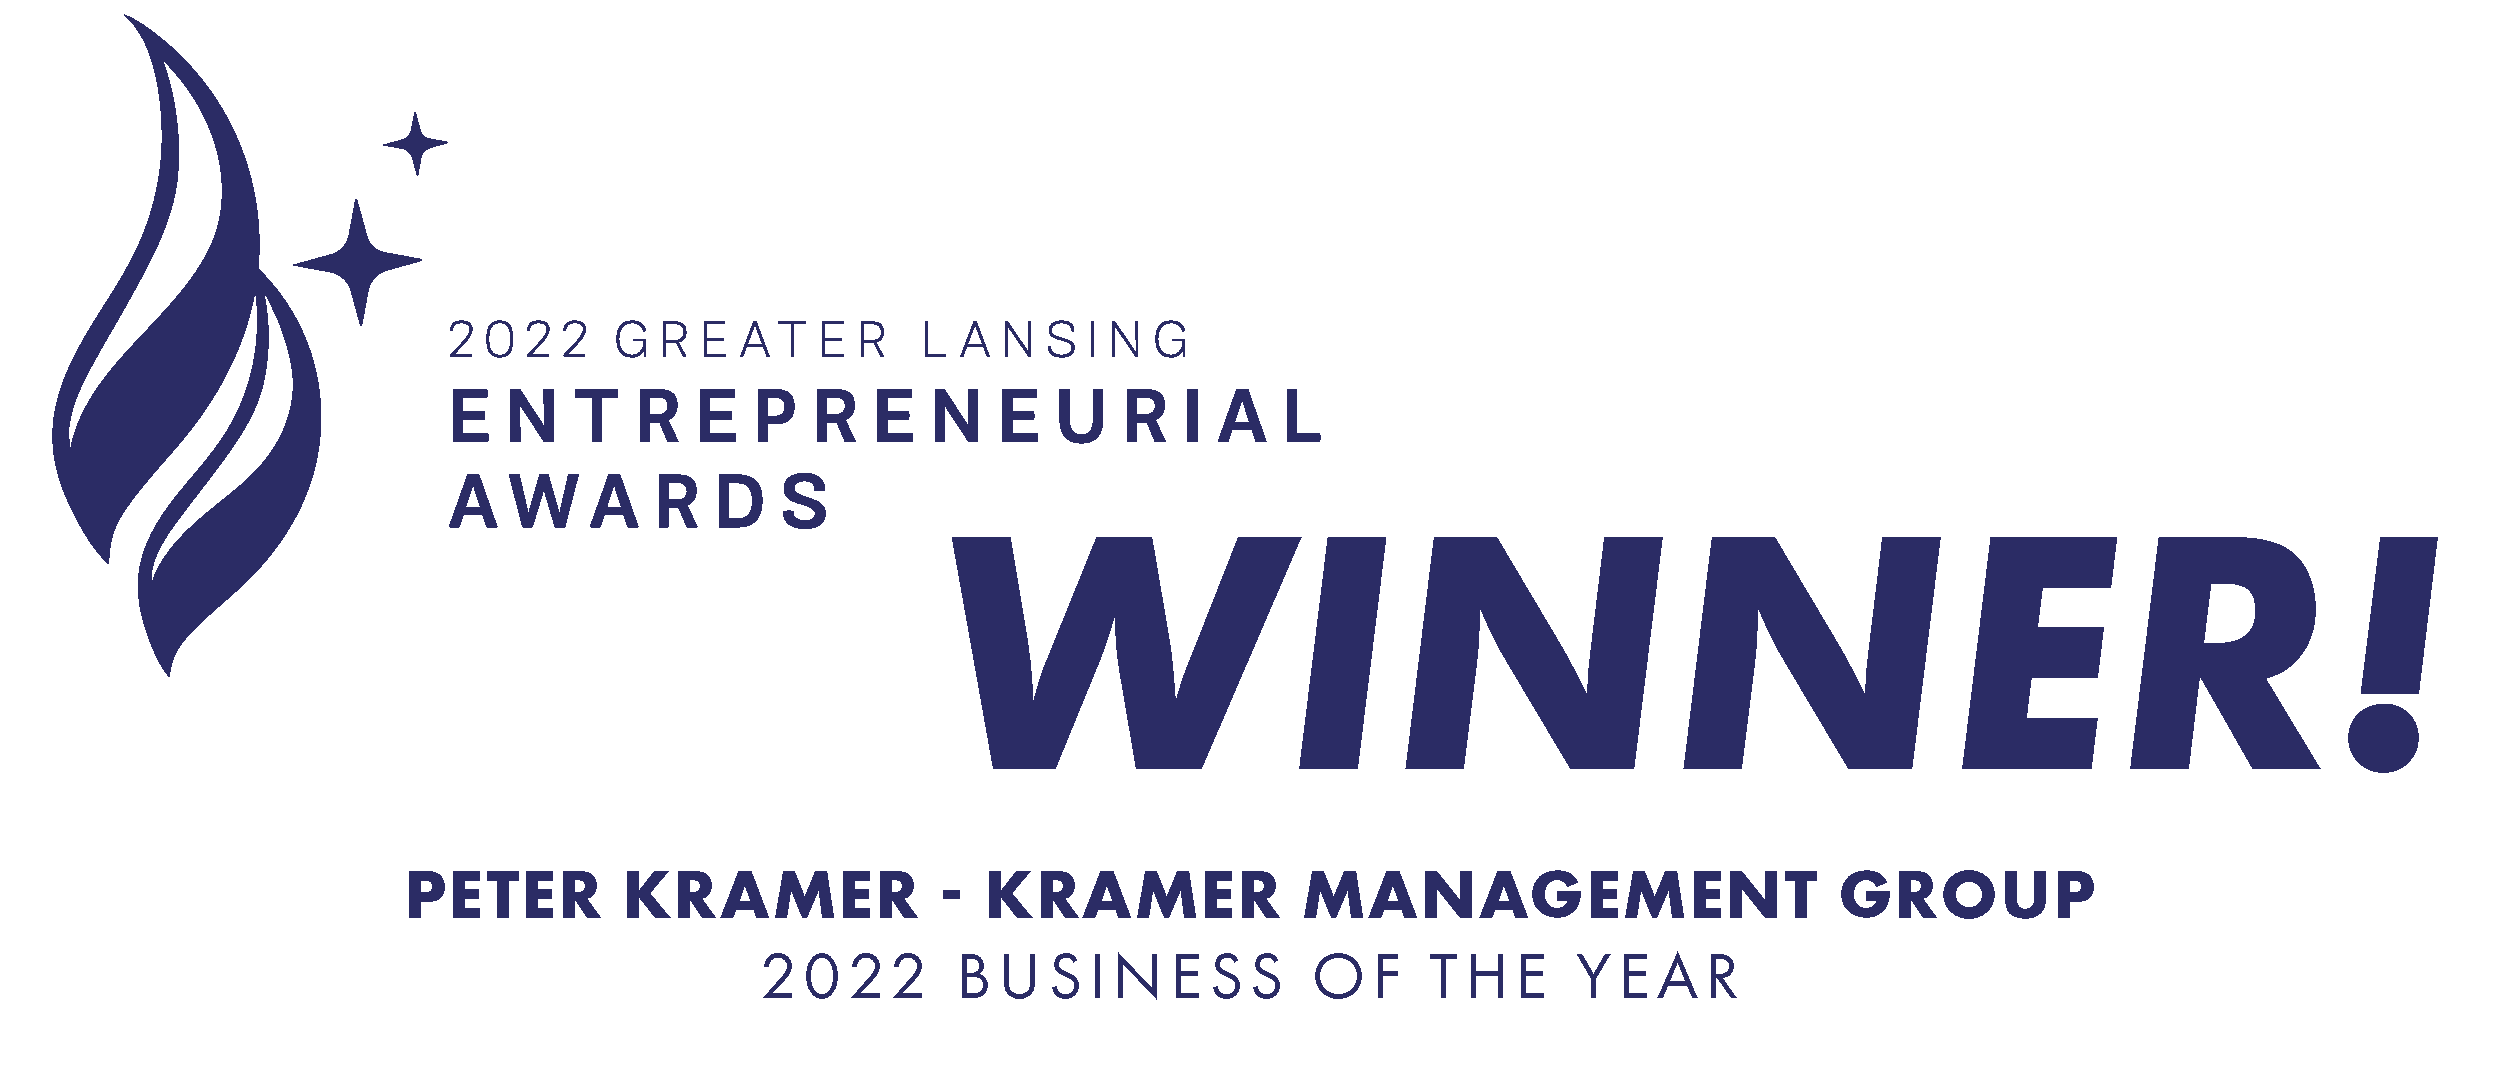 Greater Lansing Entrepreneurial Awards Winner. Peter Kramer - Kramer Management Group. 2022 Business of the Year